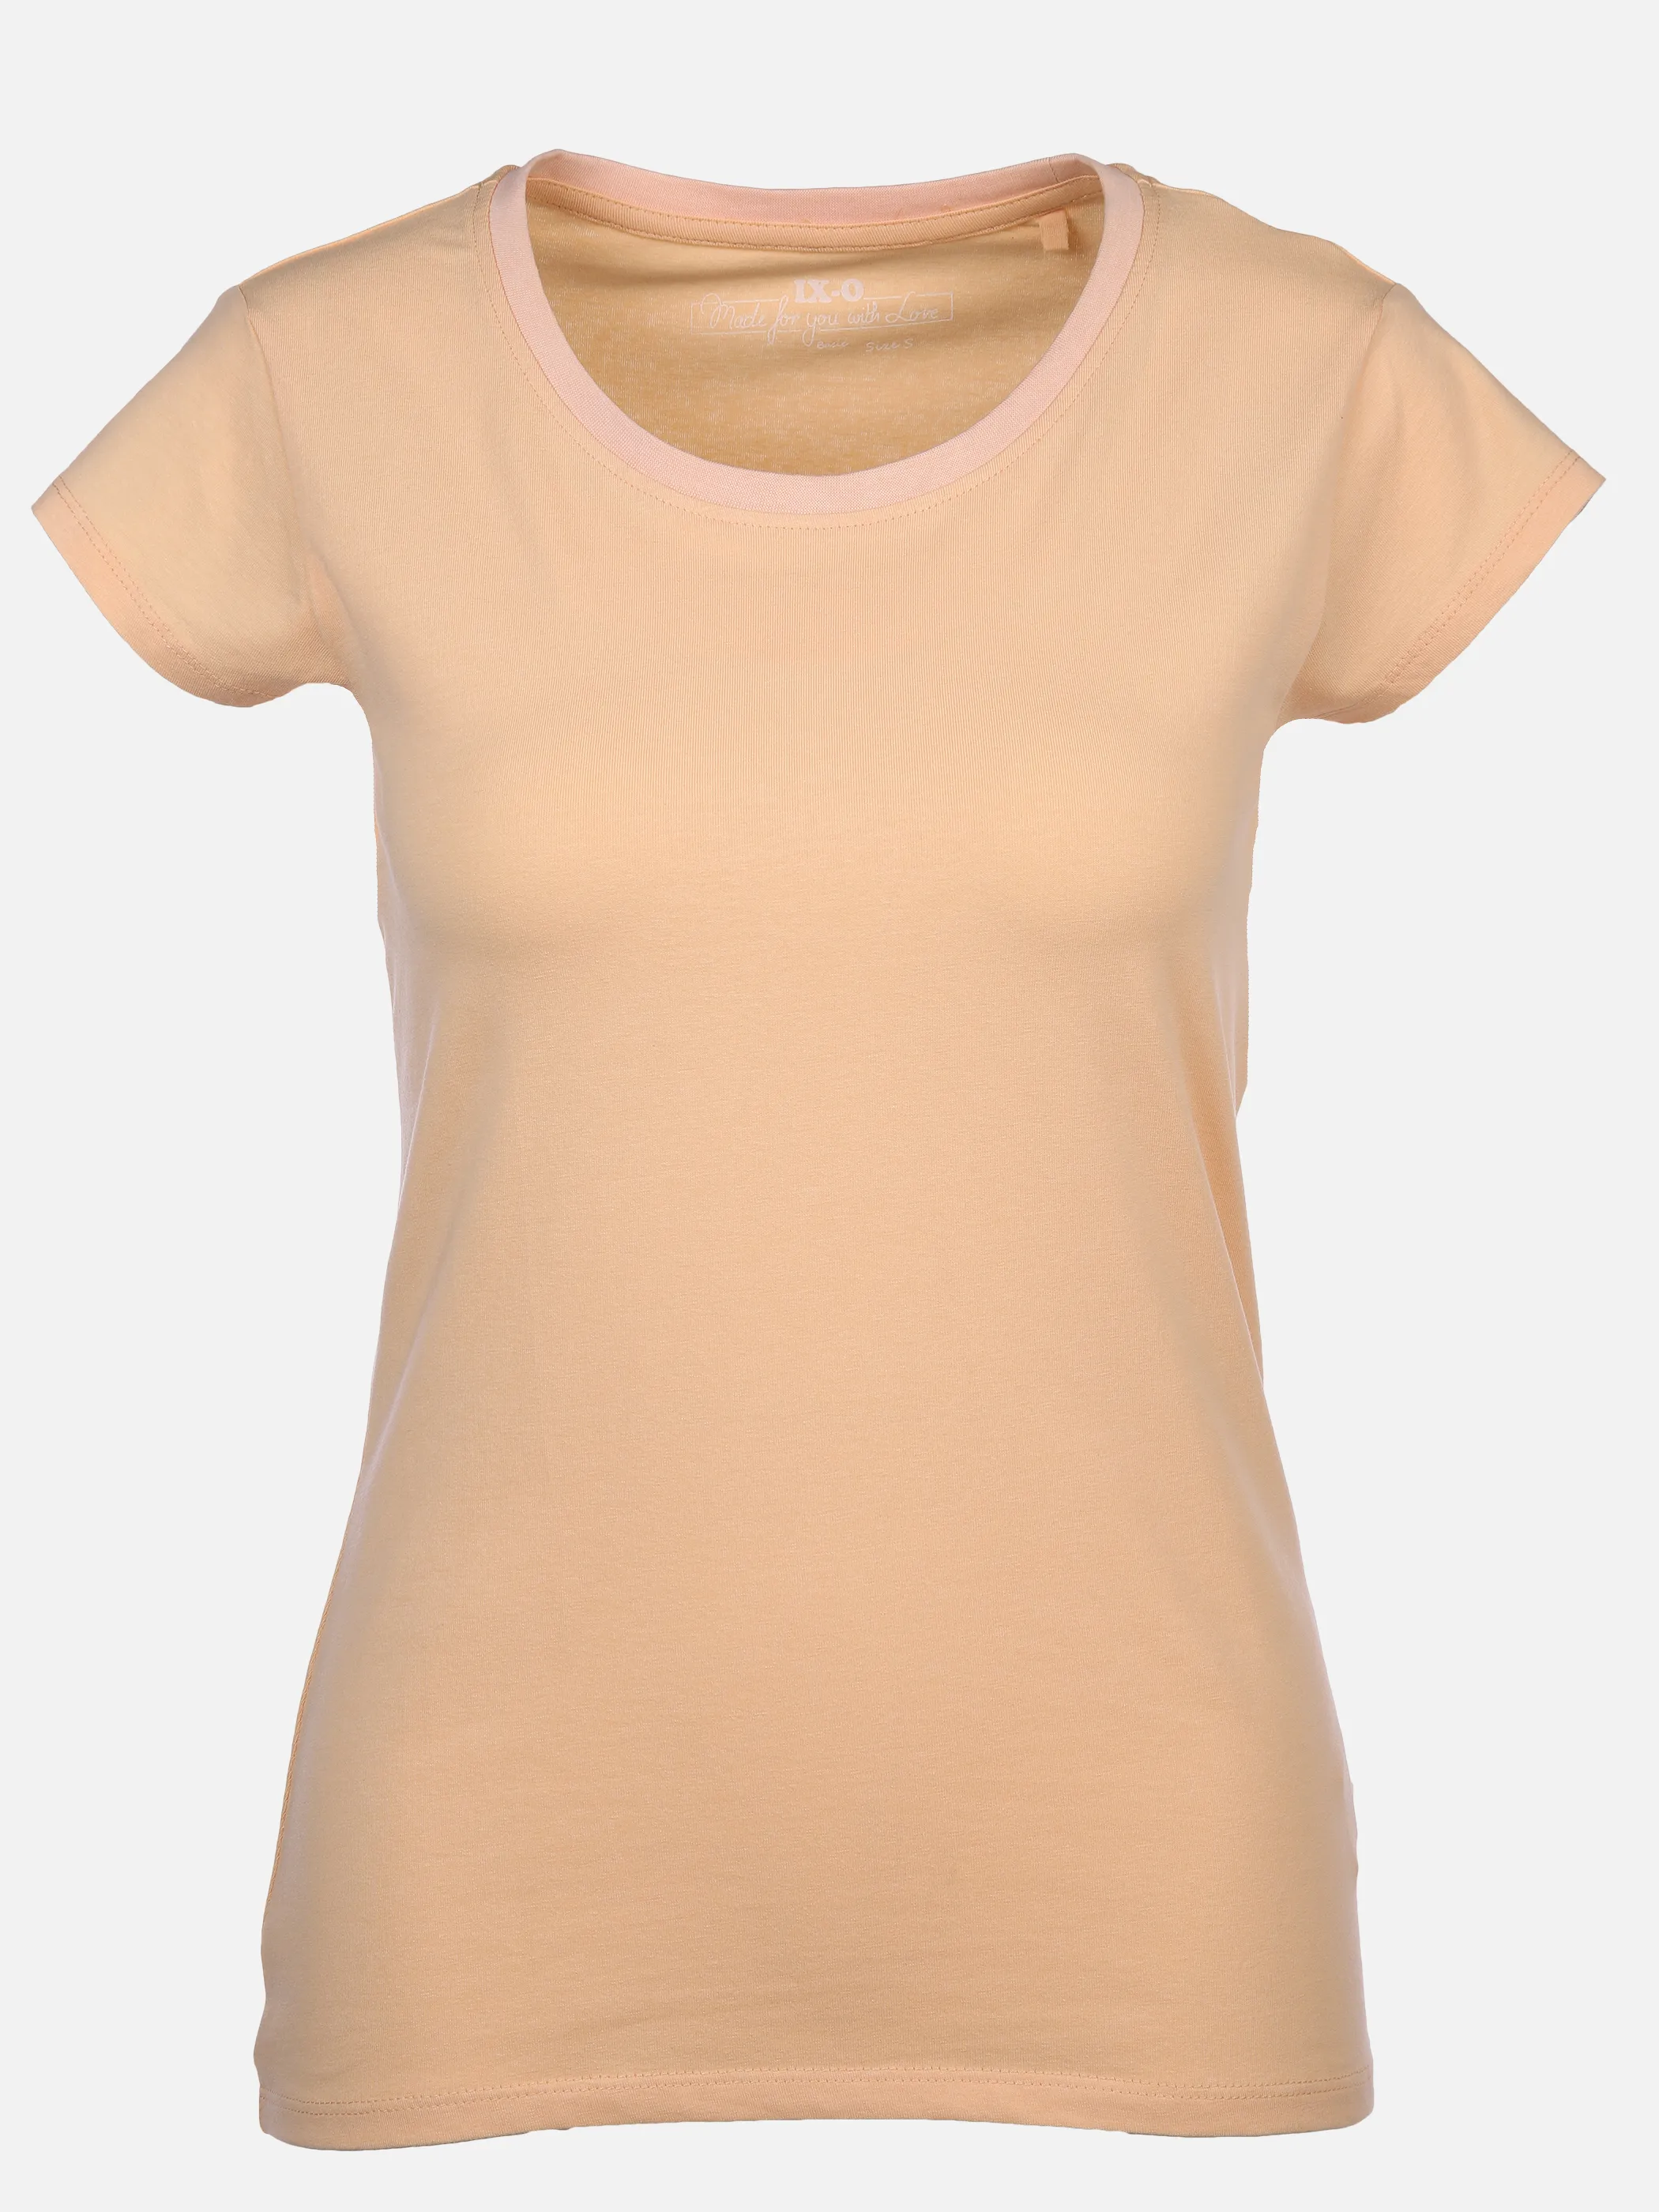 IX-O YF-Da T-Shirt Basic Orange 890072 13-1020TCX 1